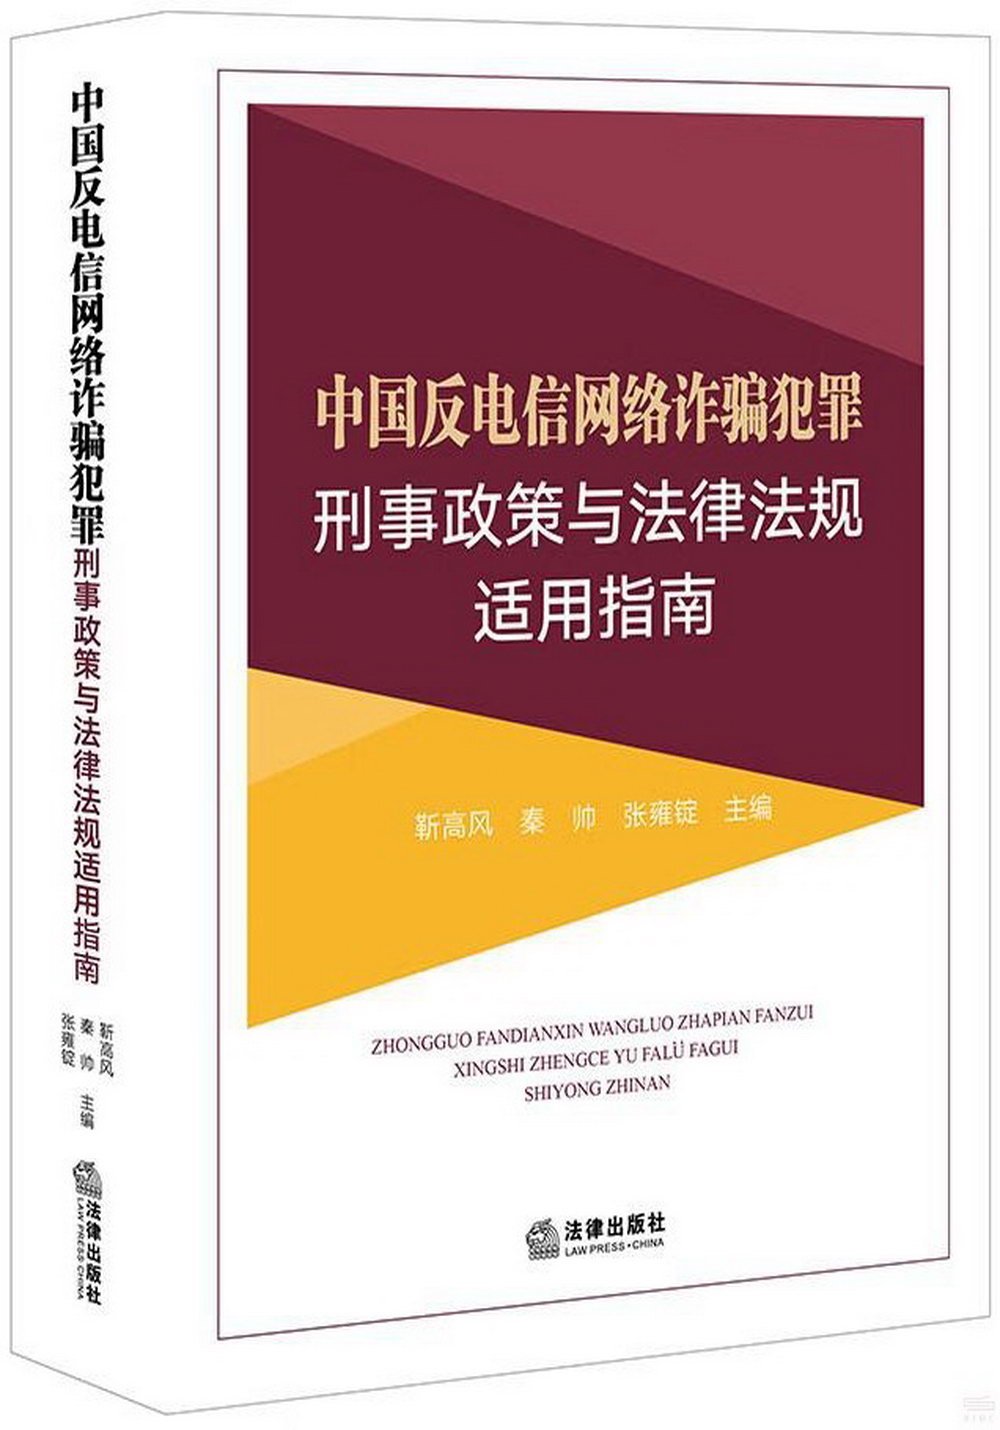 中國反電信網絡詐騙犯罪刑事政策與法律法規適用指南